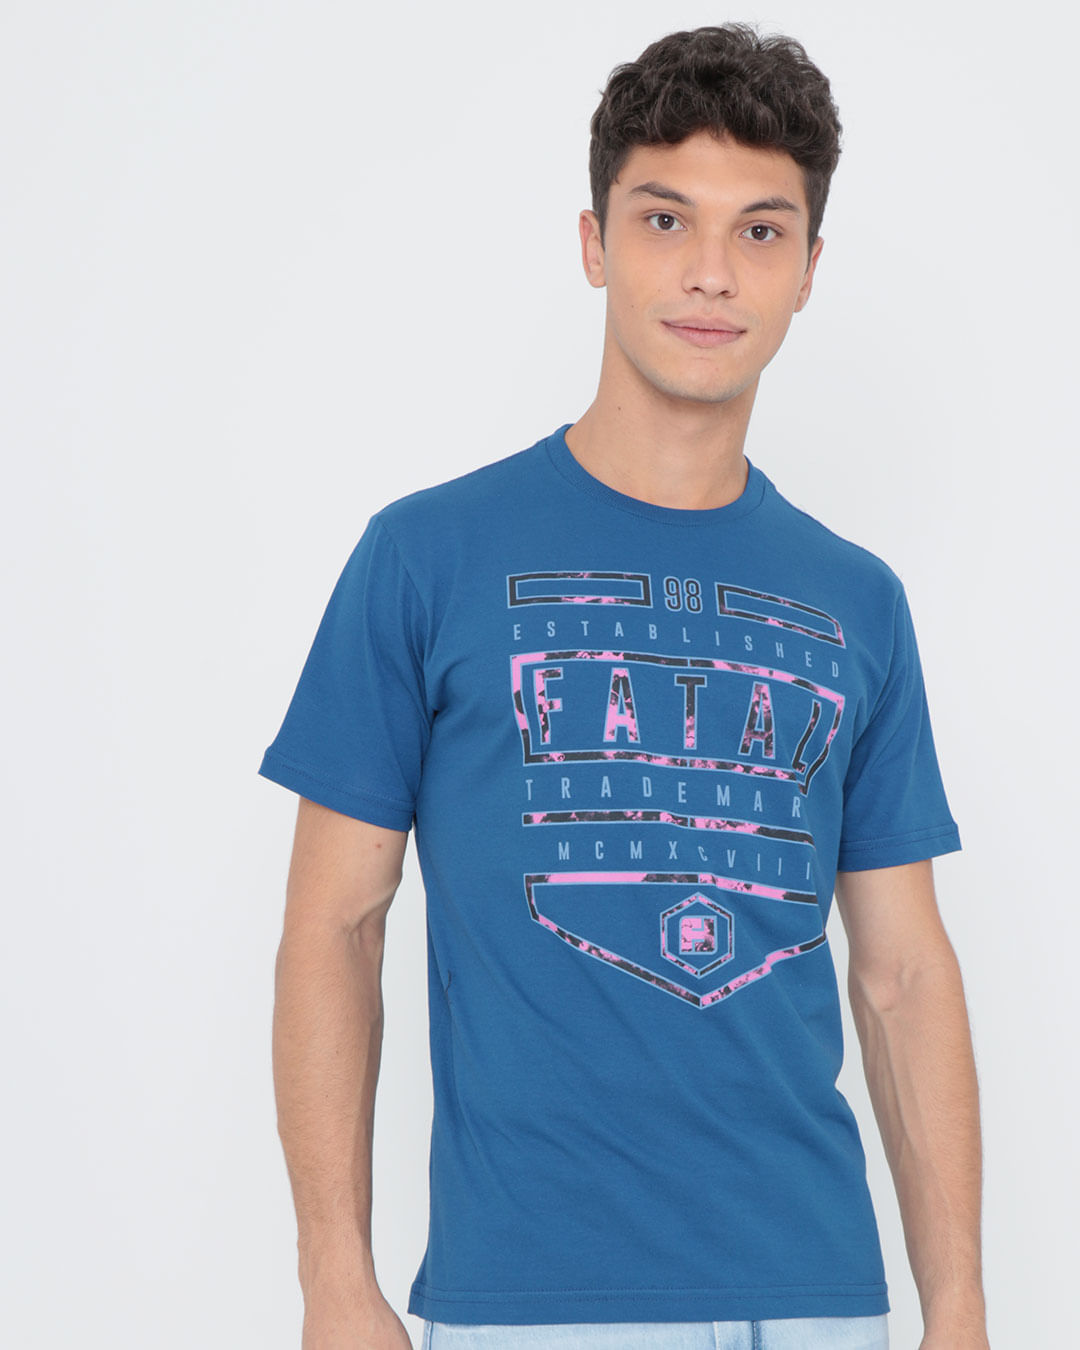 Camiseta-Estampada-Fatal-Azul